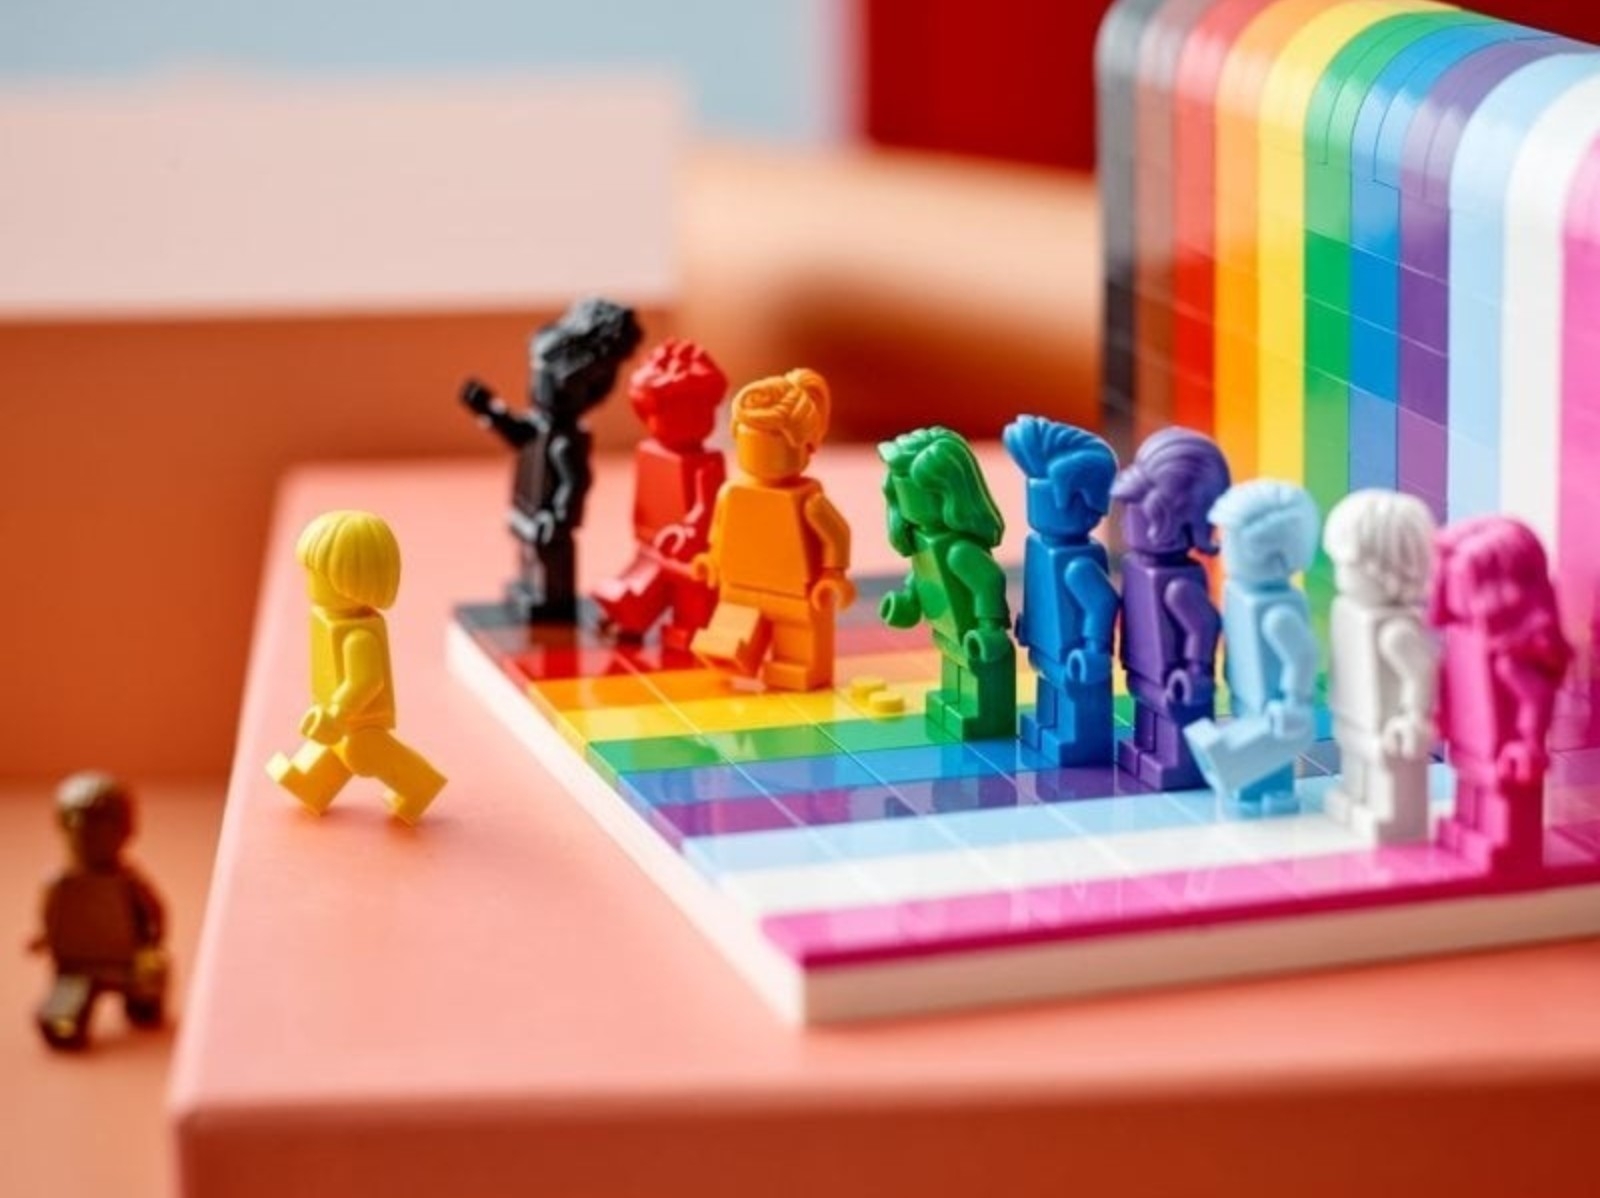 樂高響應「同志驕傲月」推出限量 LEGO 玩具，無論放在辦公室或家中都很療癒！